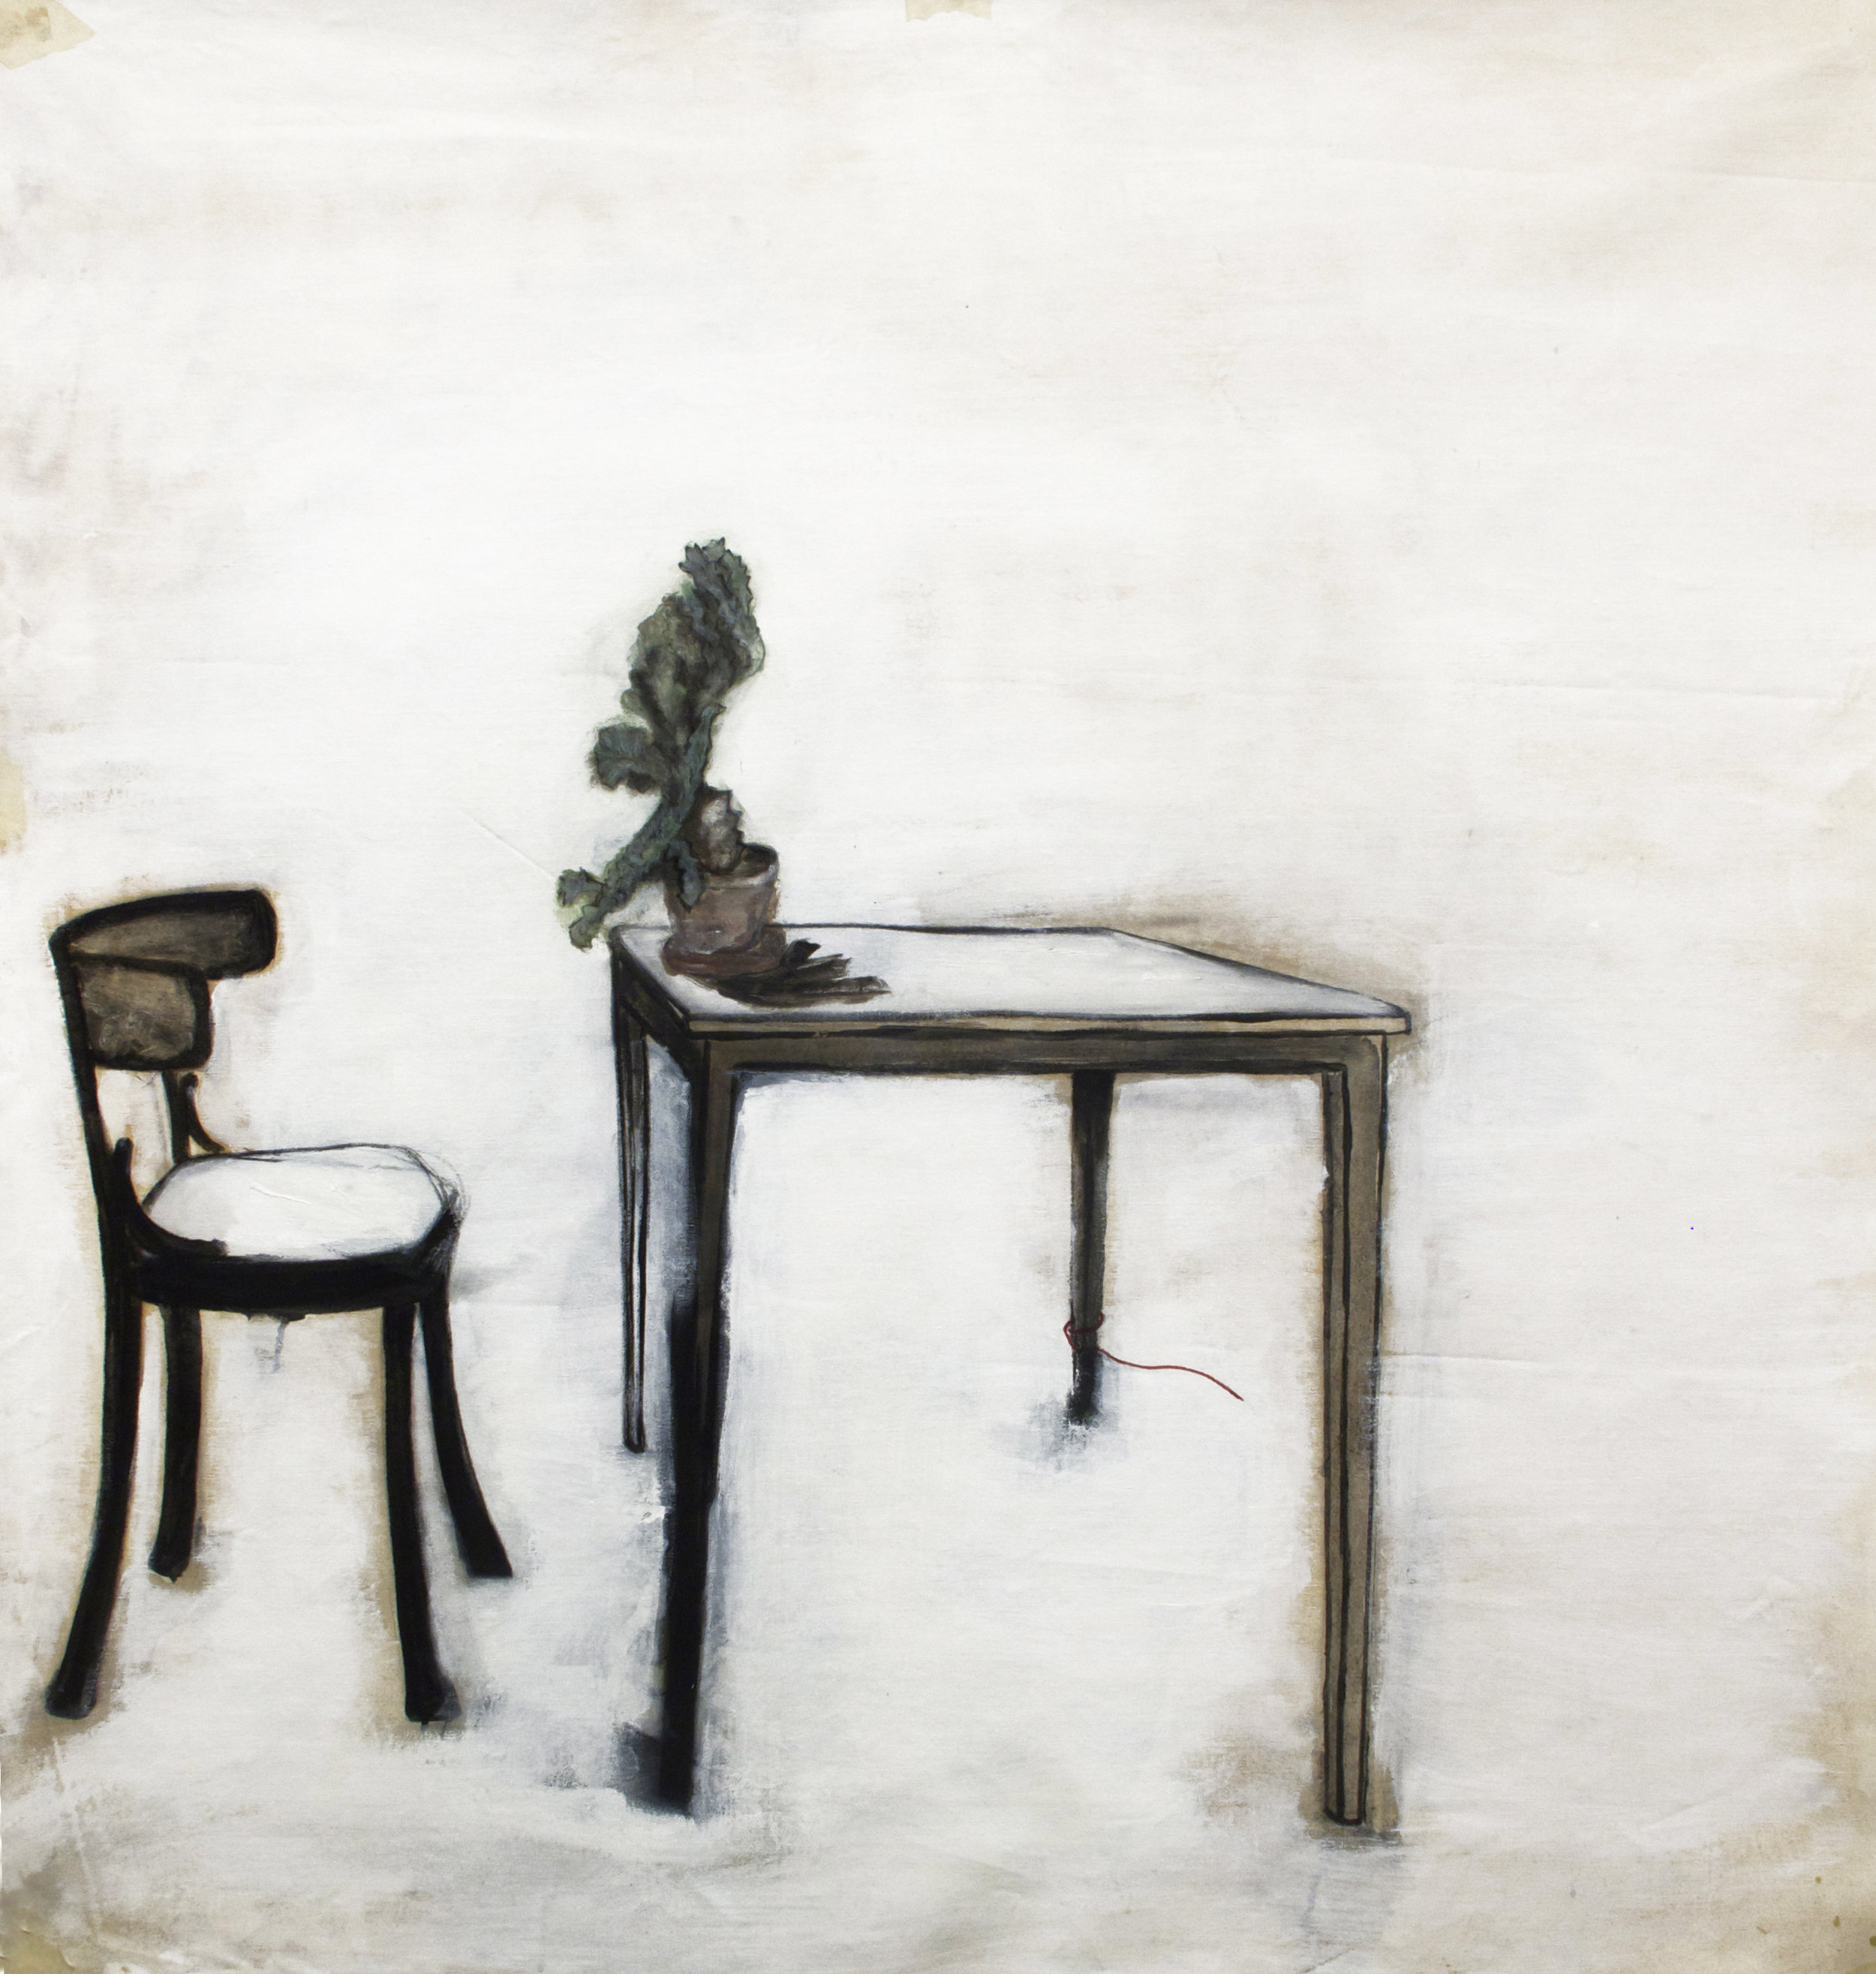  Table, 2013, acrylic paint on canvas, 123 x 126 cm   